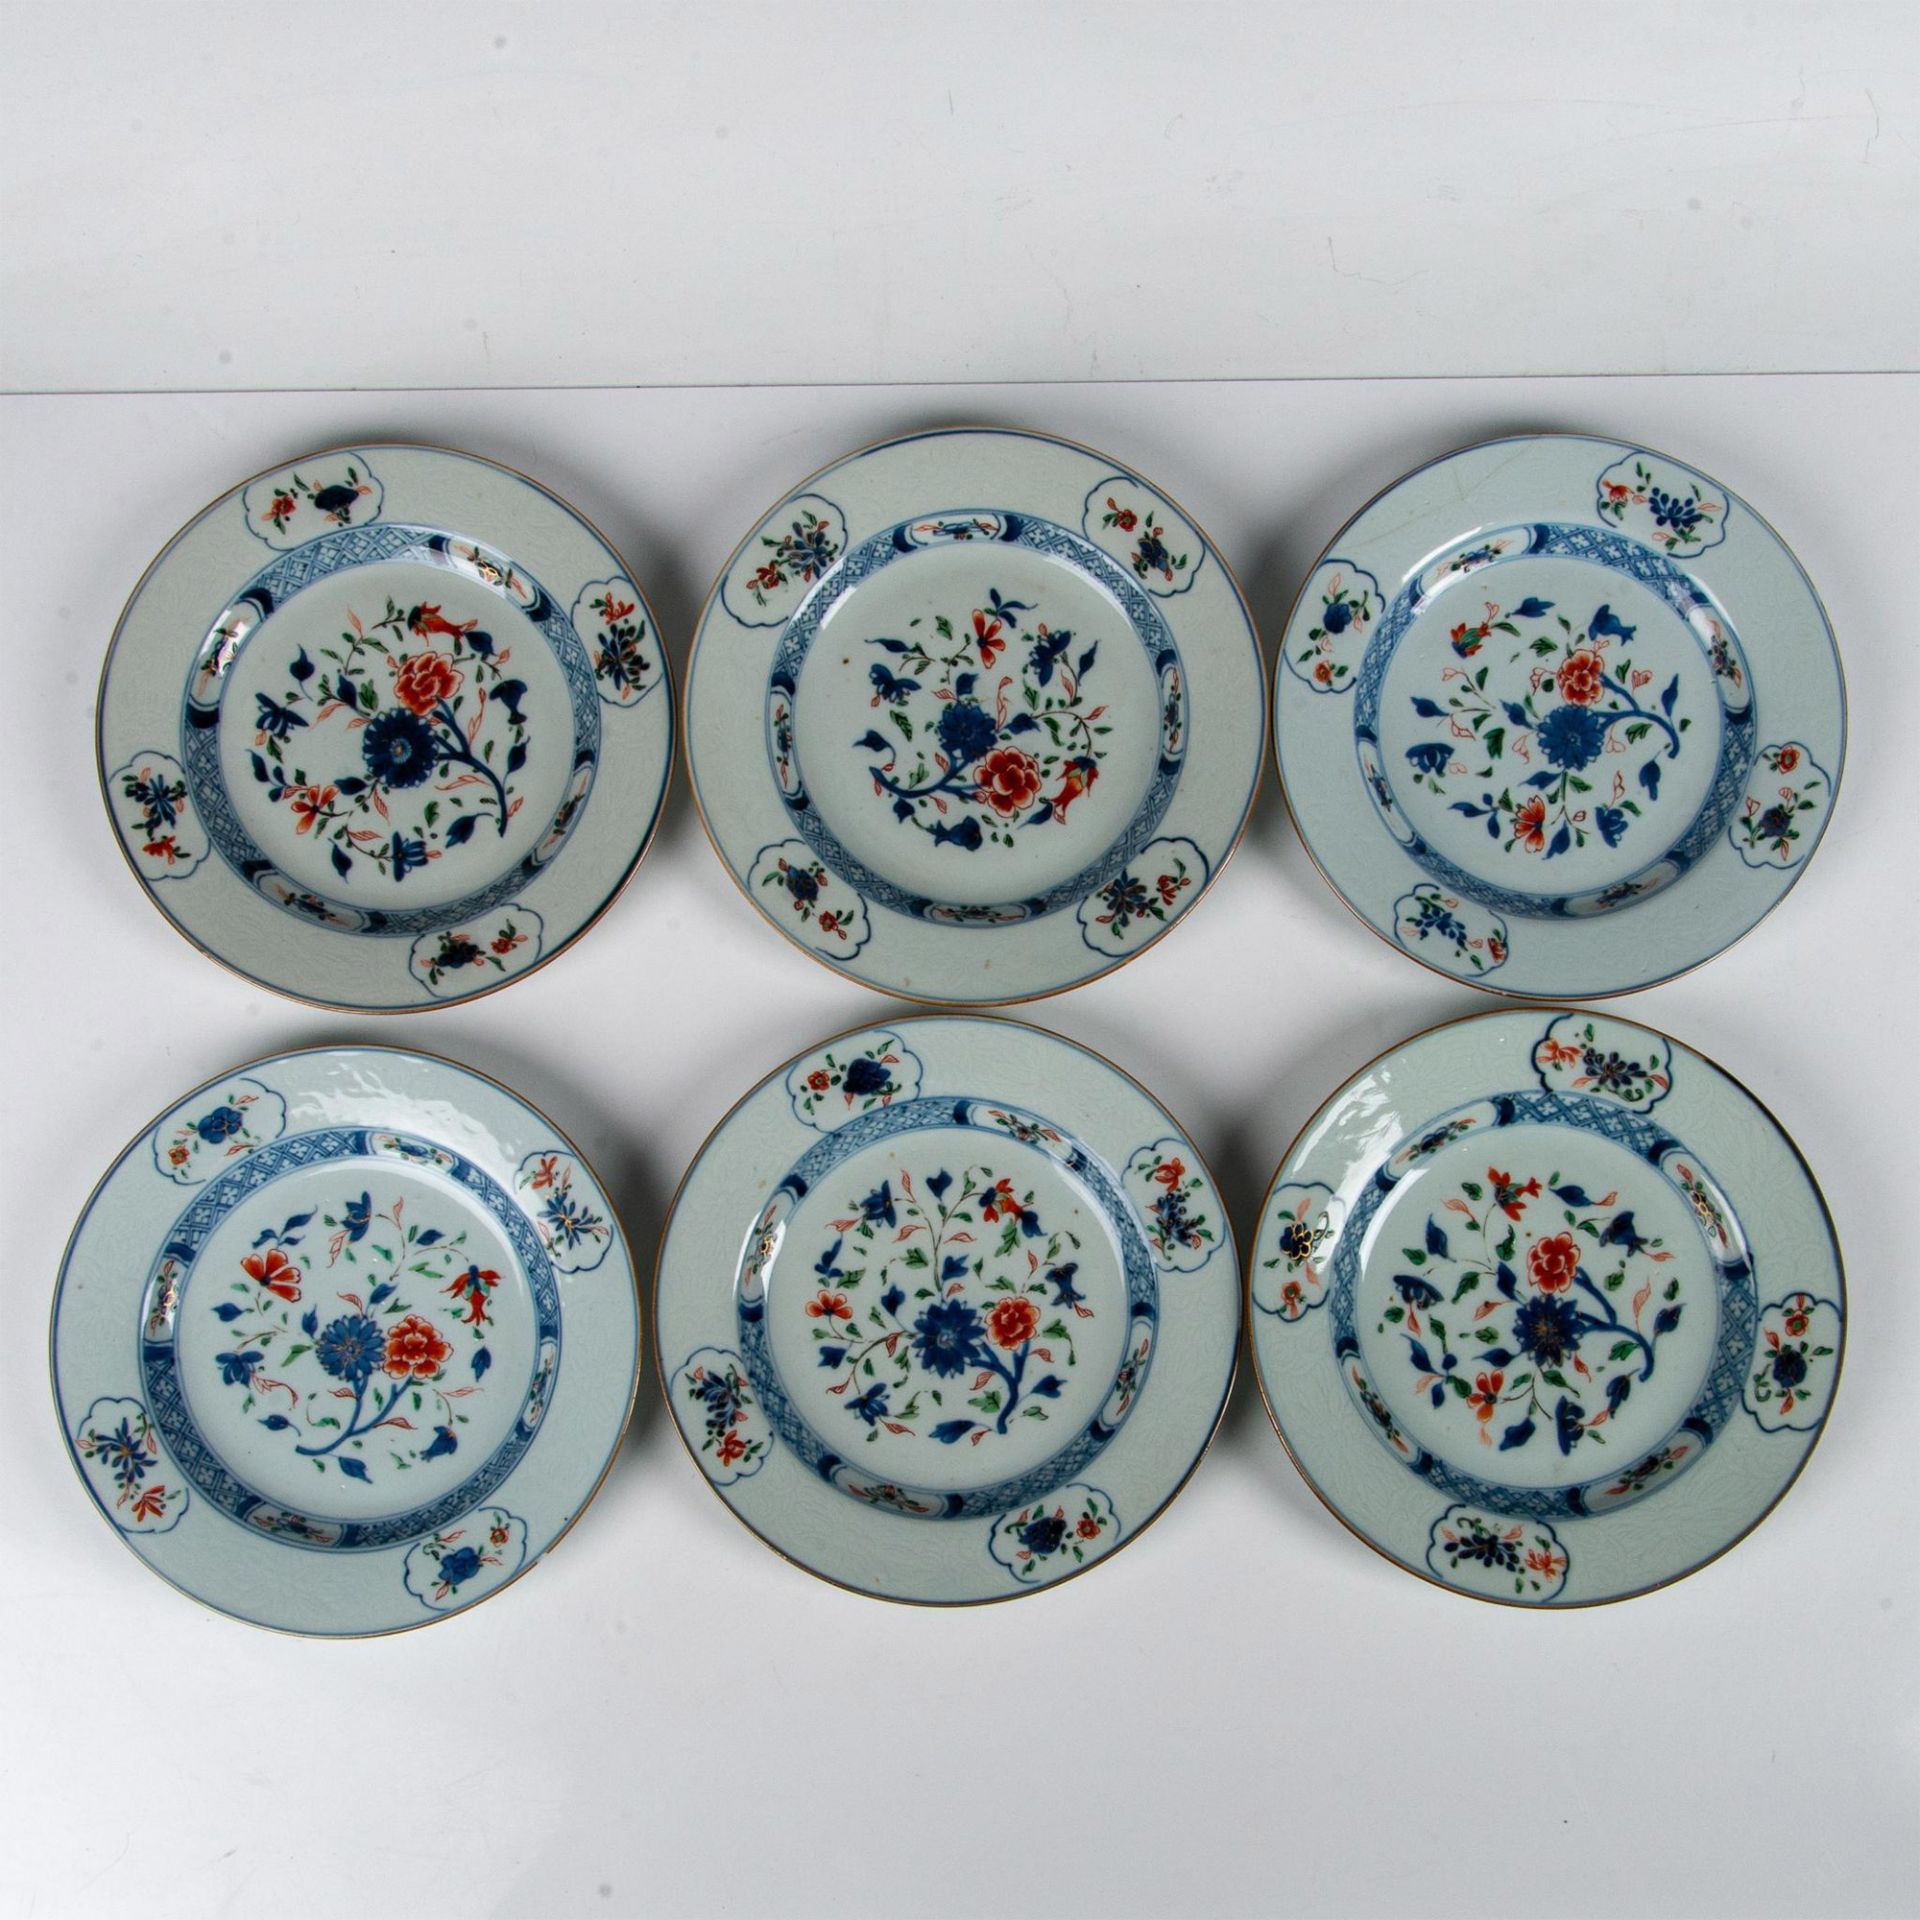 6pc Chinese Imari Porcelain Salad Plates - Image 2 of 5